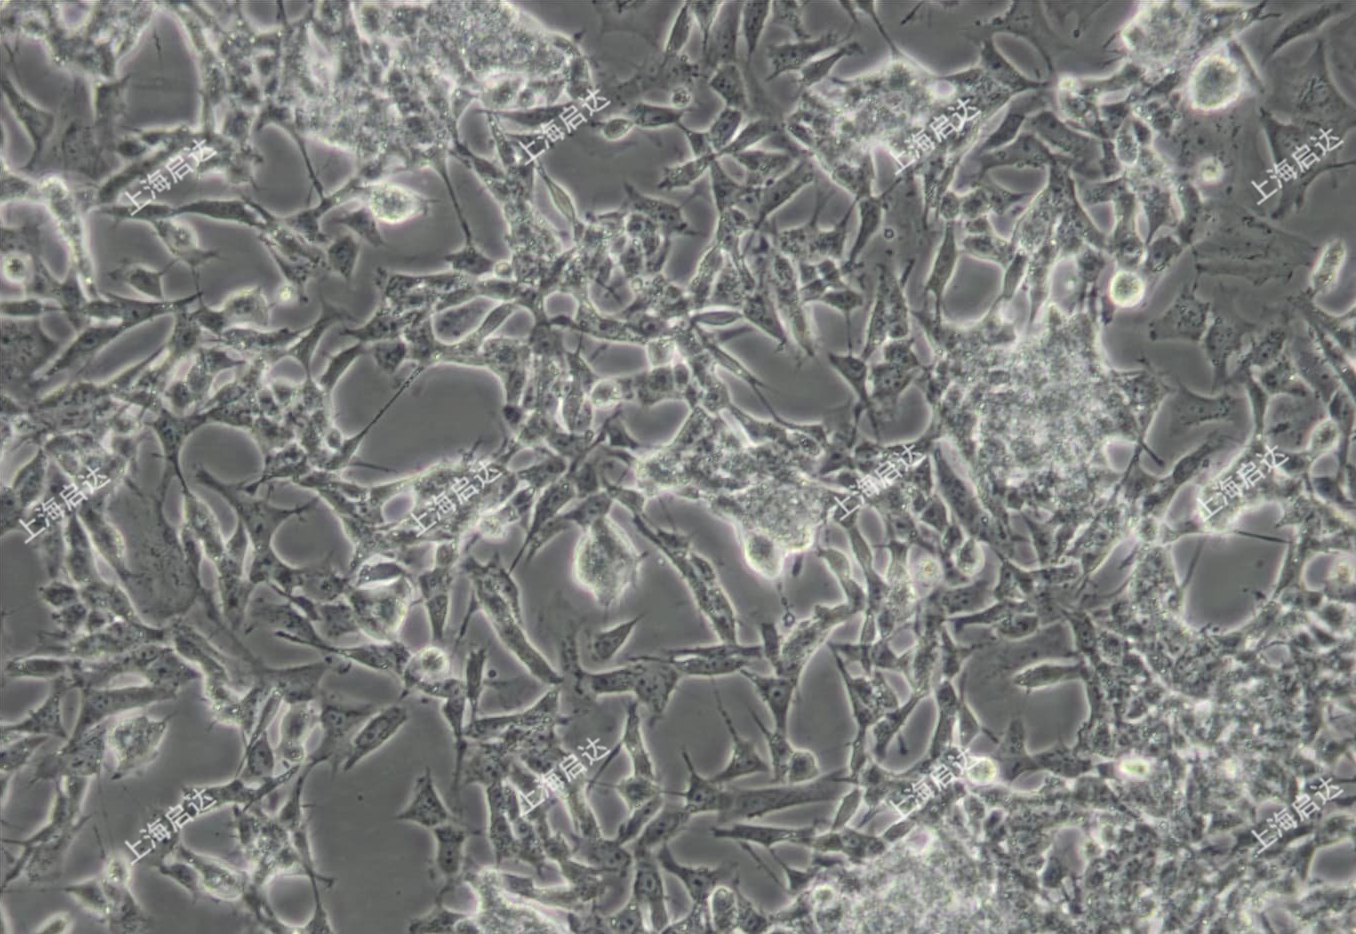 SK-N-BE(2)人神经母细胞瘤细胞